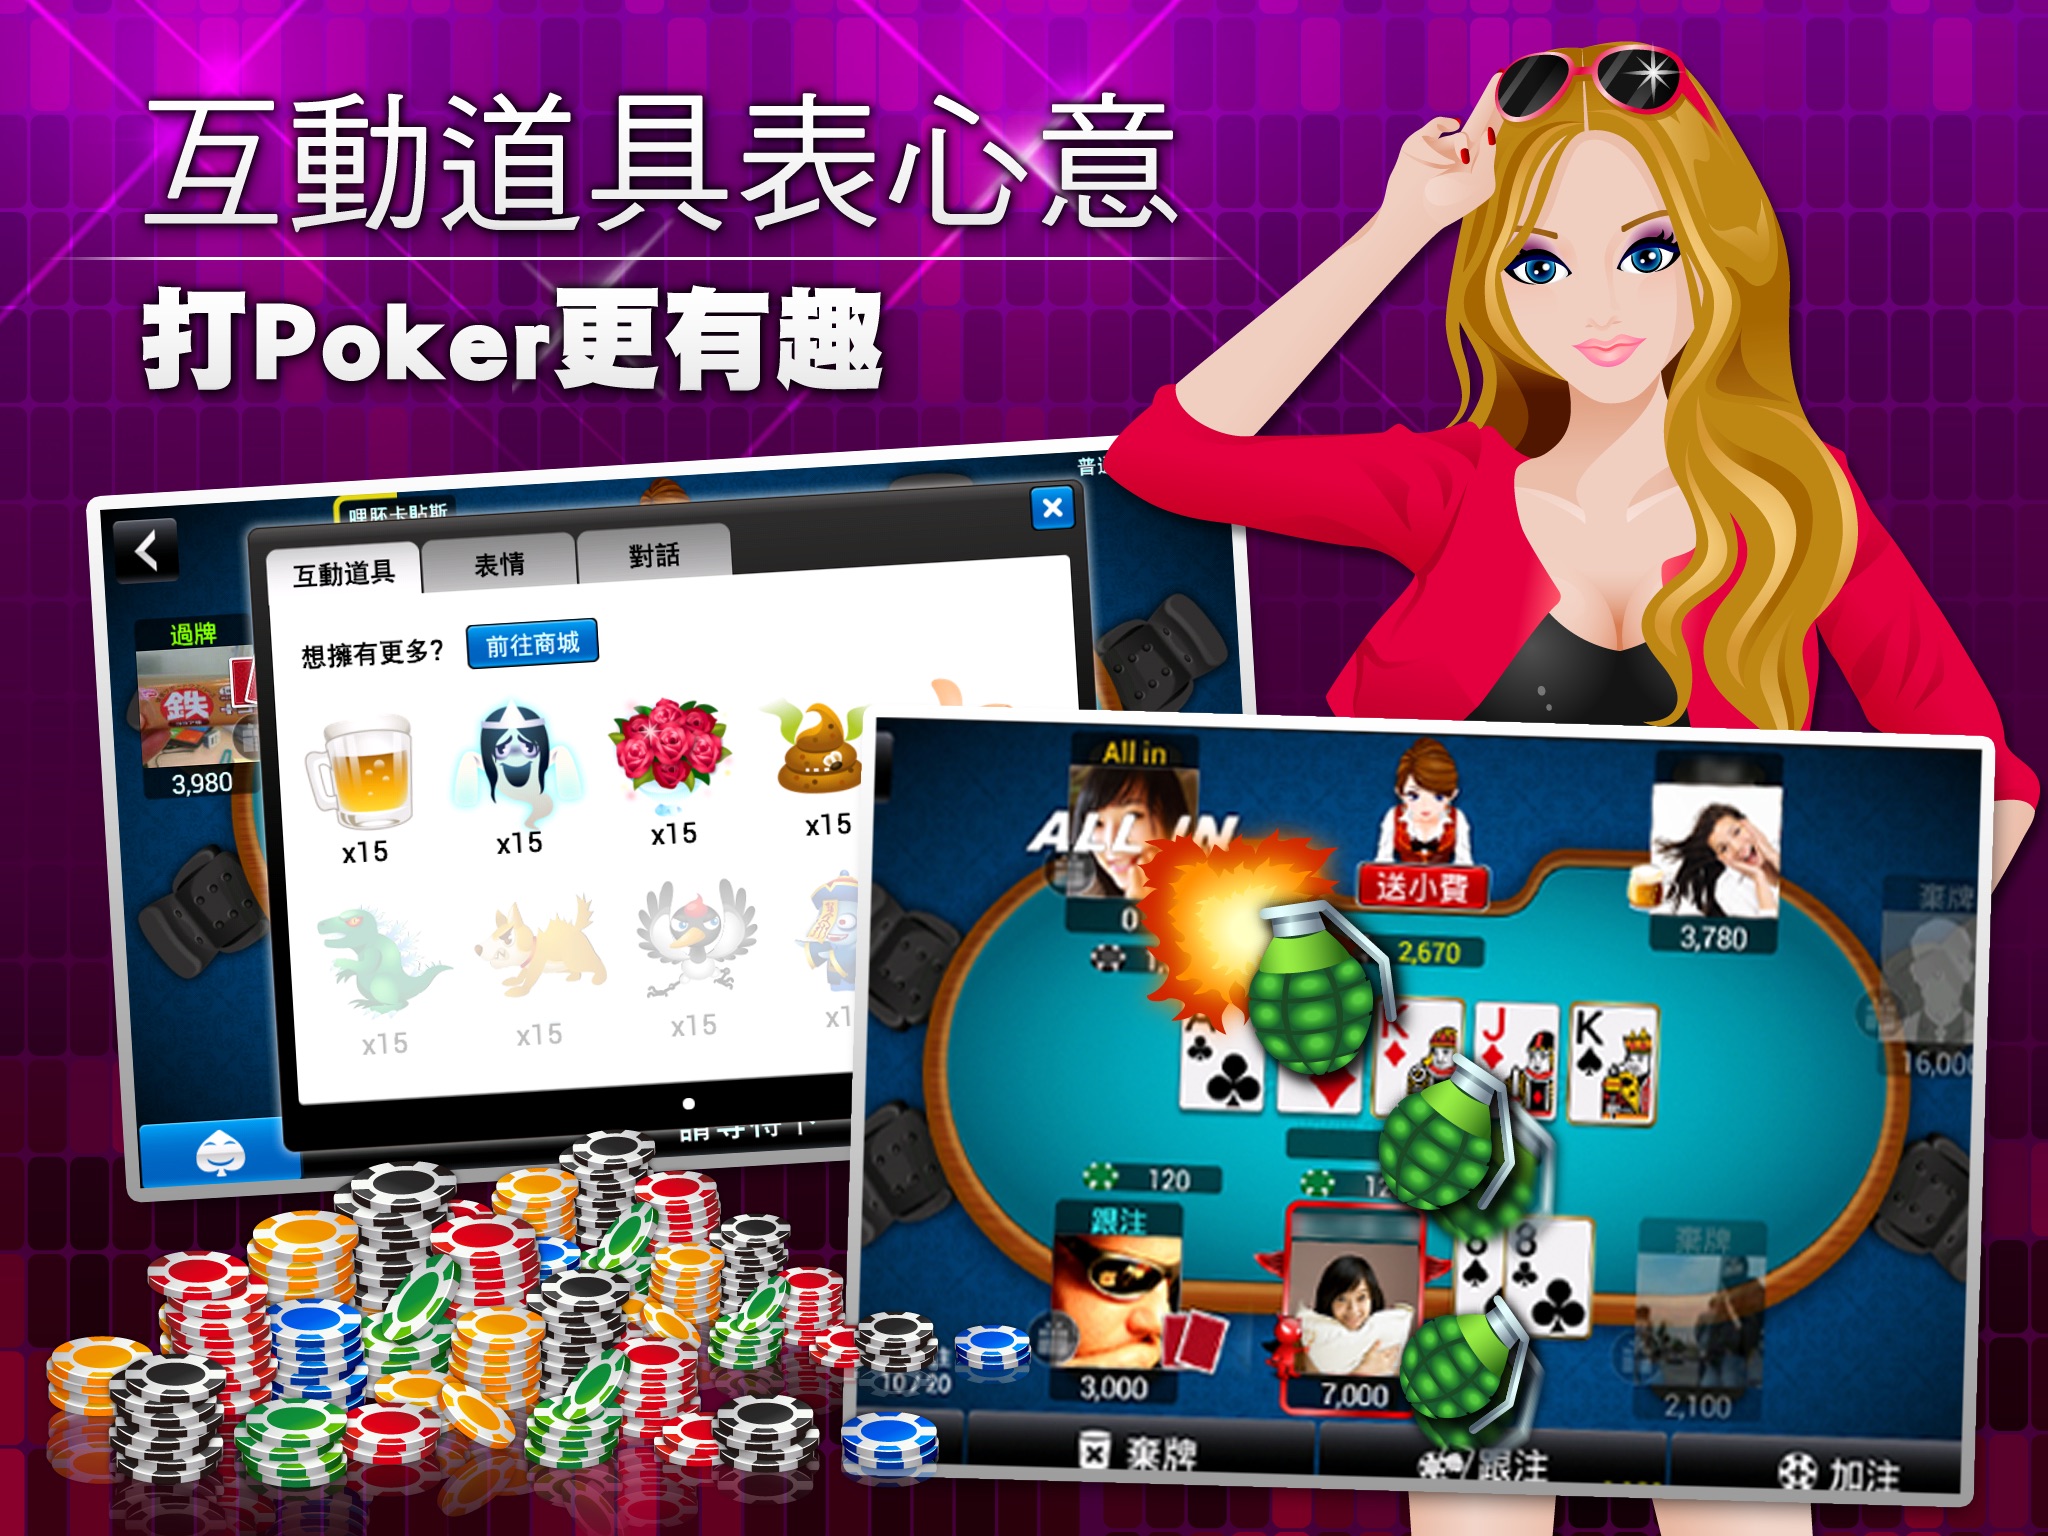 德州撲克 神來也德州撲克(Texas Poker) iPad screenshot 4